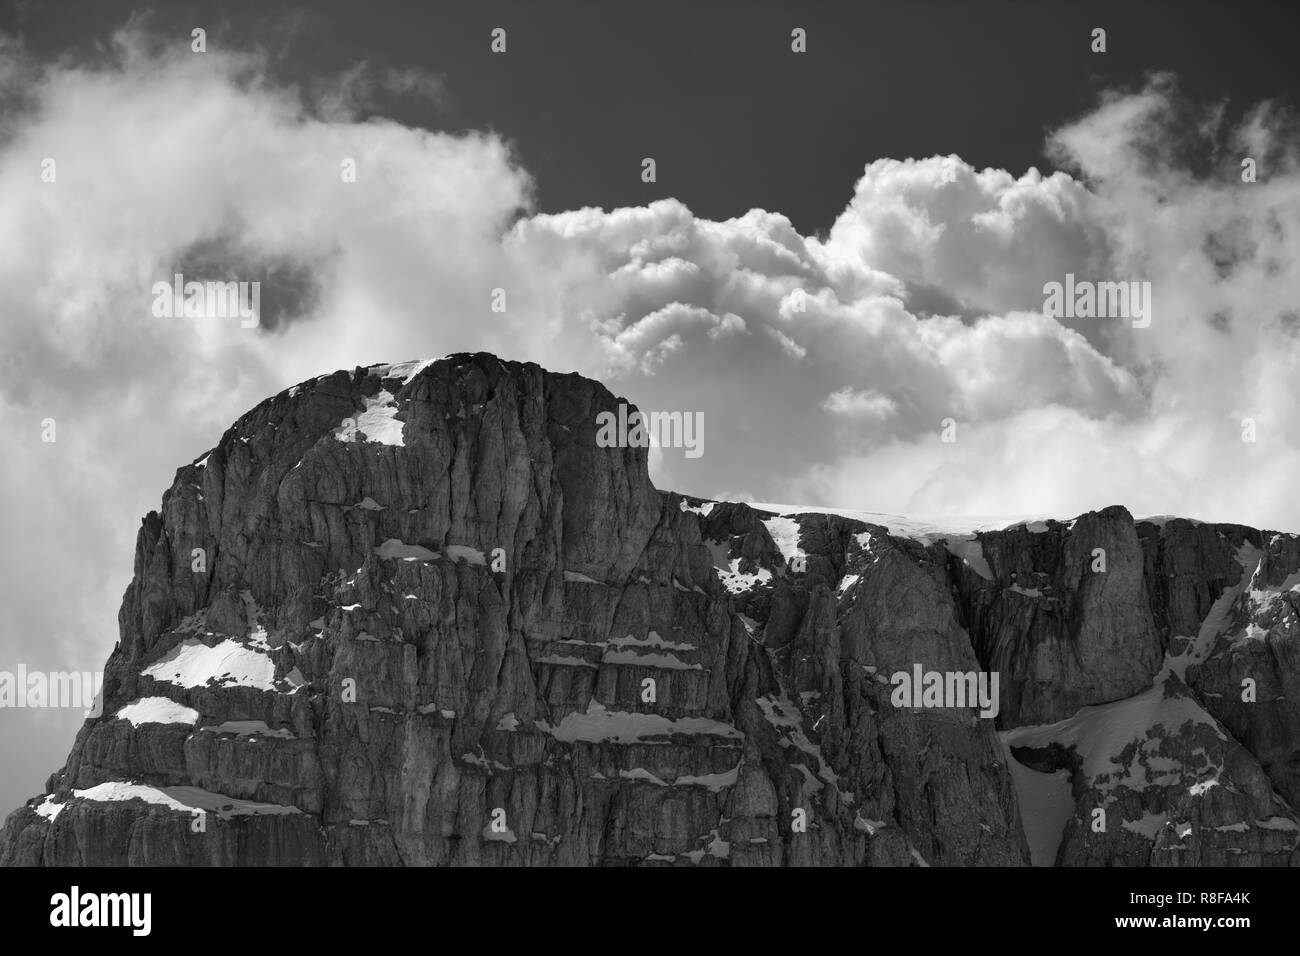 Haut de montagne avec la neige et le ciel avec des nuages. La Turquie, Monts Taurus centrale, Aladaglar (Anti-Taurus). Paysage aux tons noir et blanc. Banque D'Images